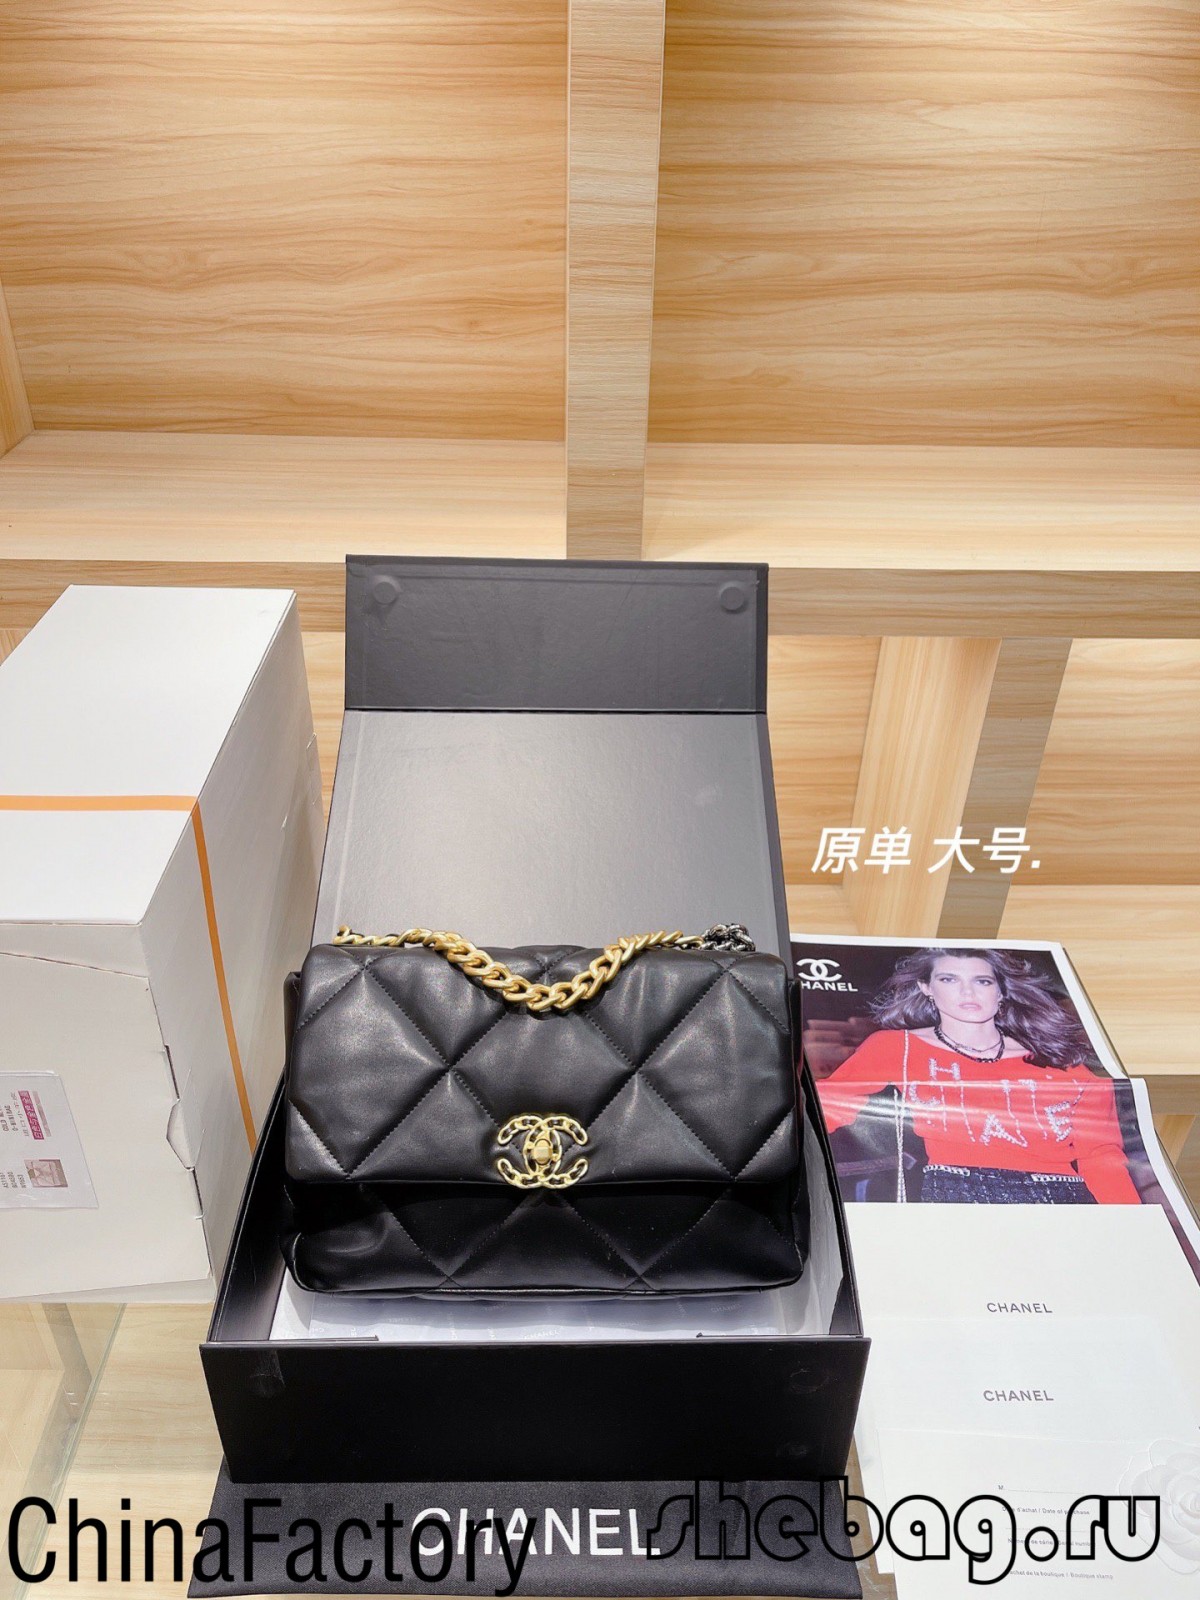 Aaa Chanel tas replika: Chanel 19 replika tas review (bywurke yn 2022)-Bêste kwaliteit Fake Louis Vuitton Bag Online Store, Replika ûntwerper tas ru